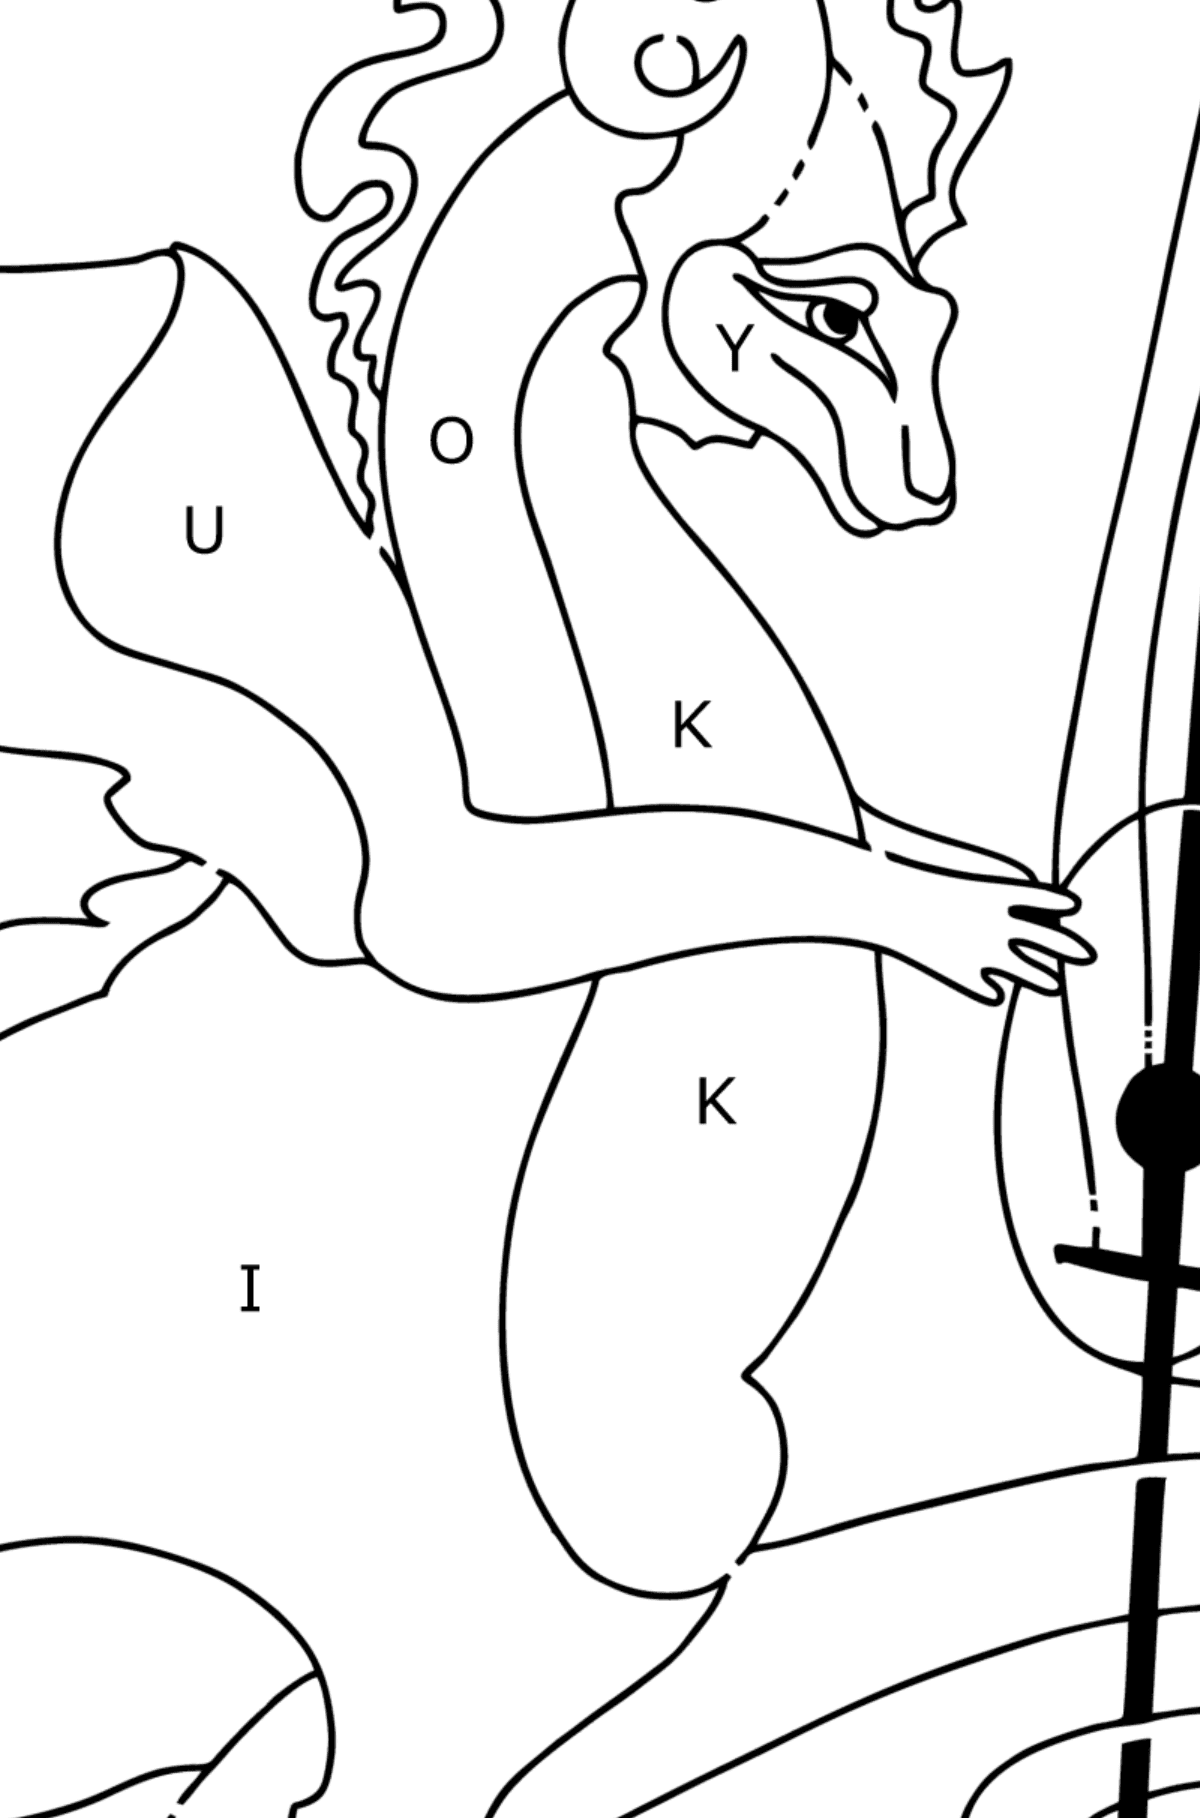 Boyama sayfası müzikal ejderha (kolay) - Harflerle Boyama çocuklar için